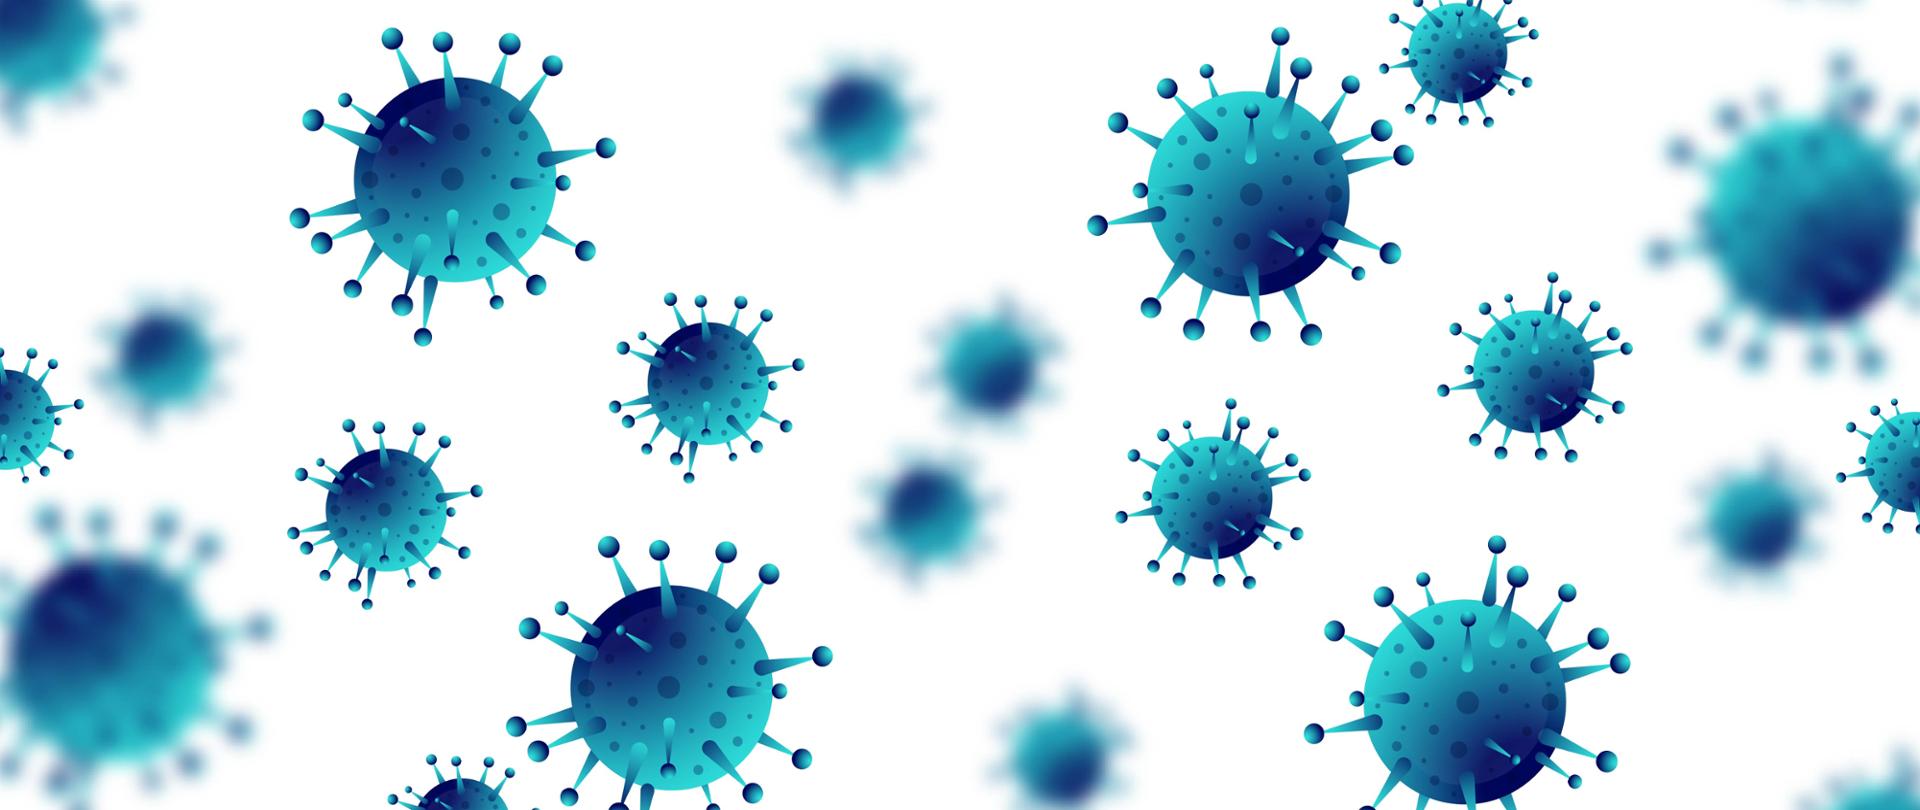 Na grafice znajdują się graficznie ukazane wirusy grypy w odcieniach niebieskiego. Tło jest białe.